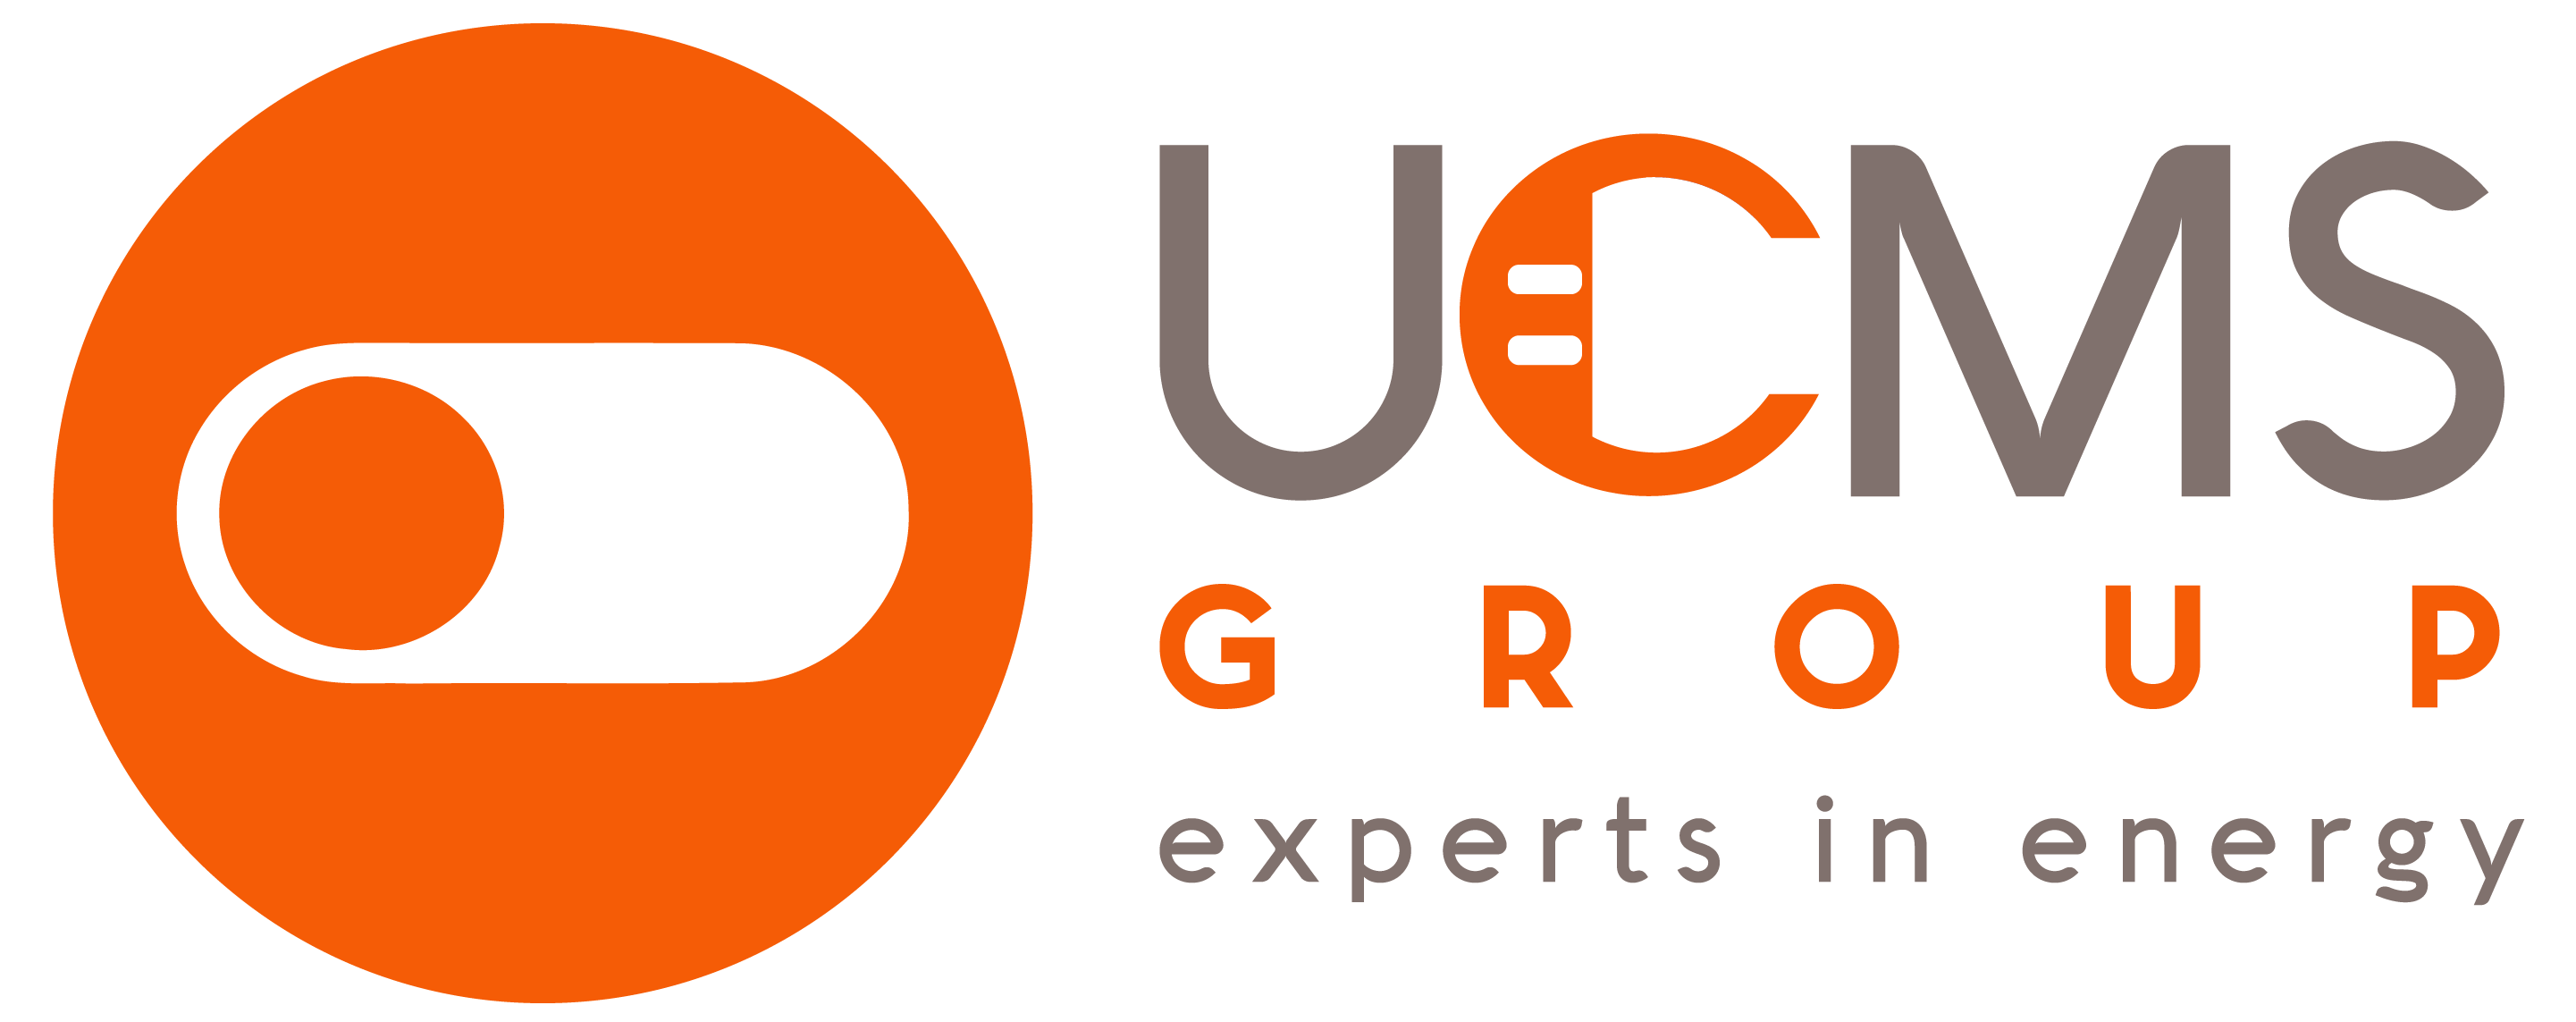 UCMS Group